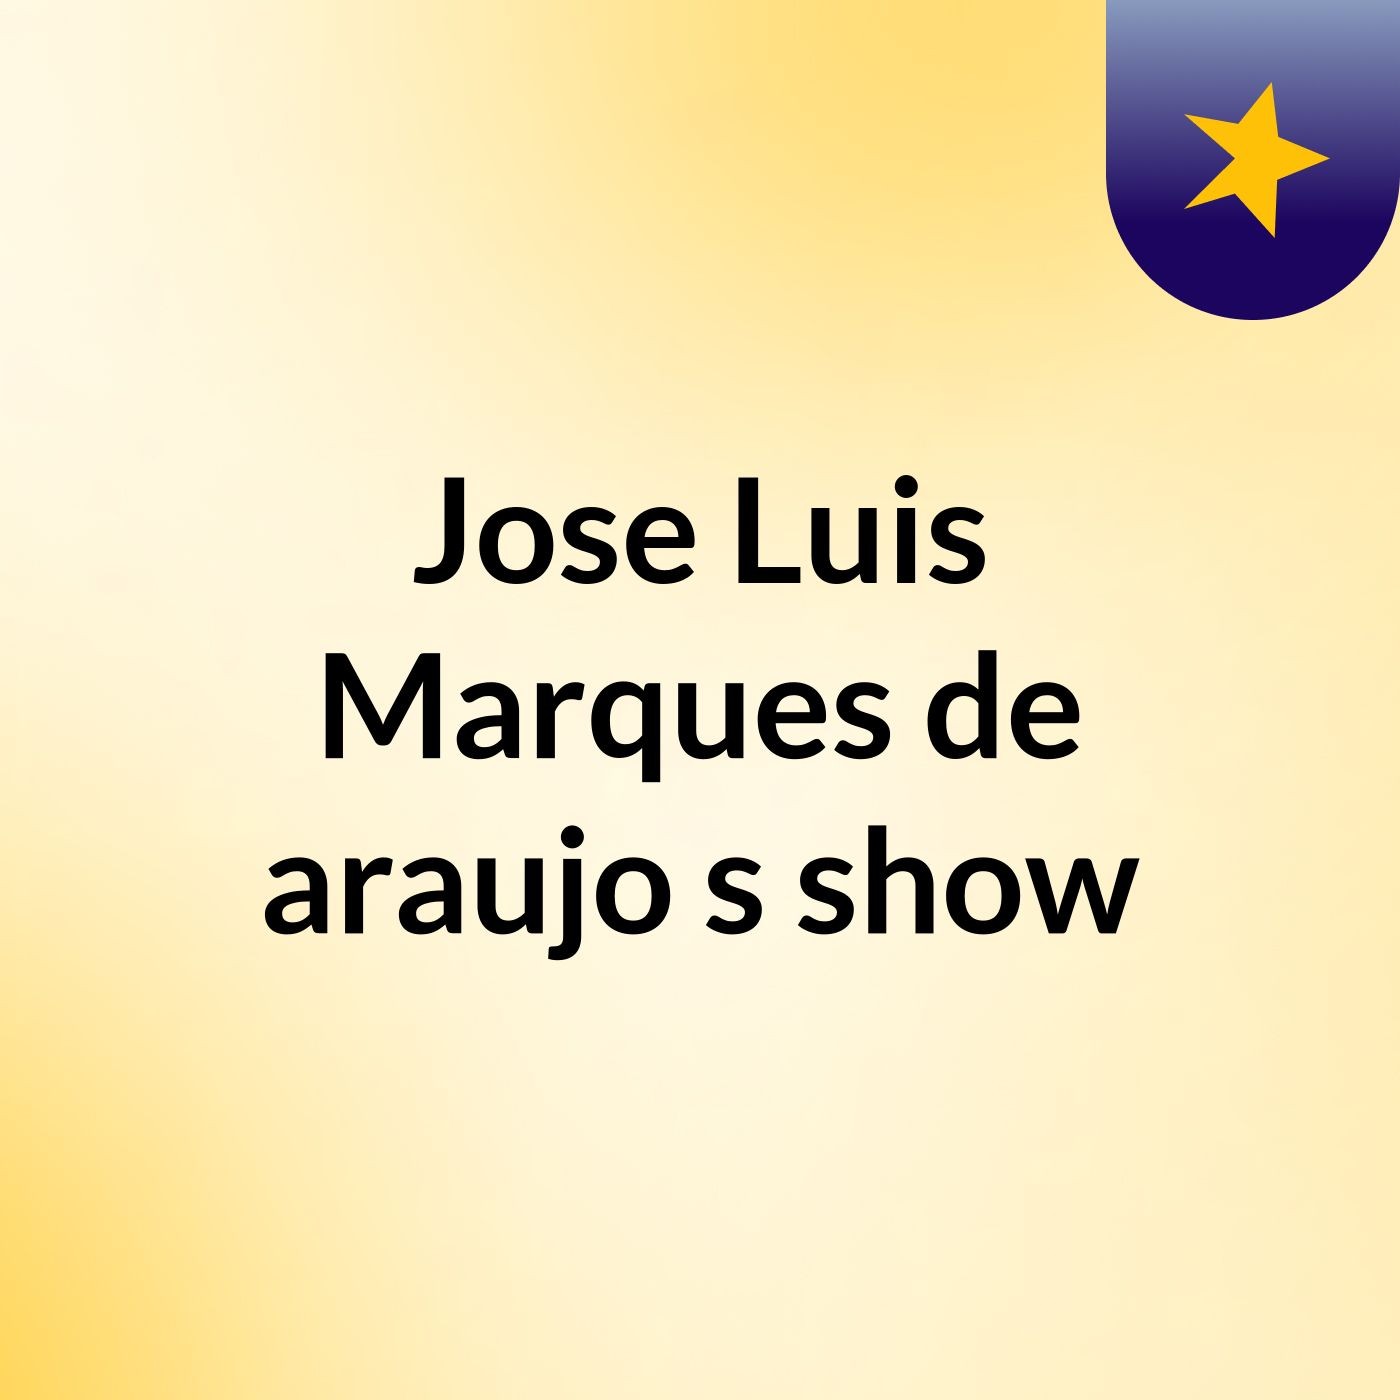 Jose Luis Marques de araujo's show